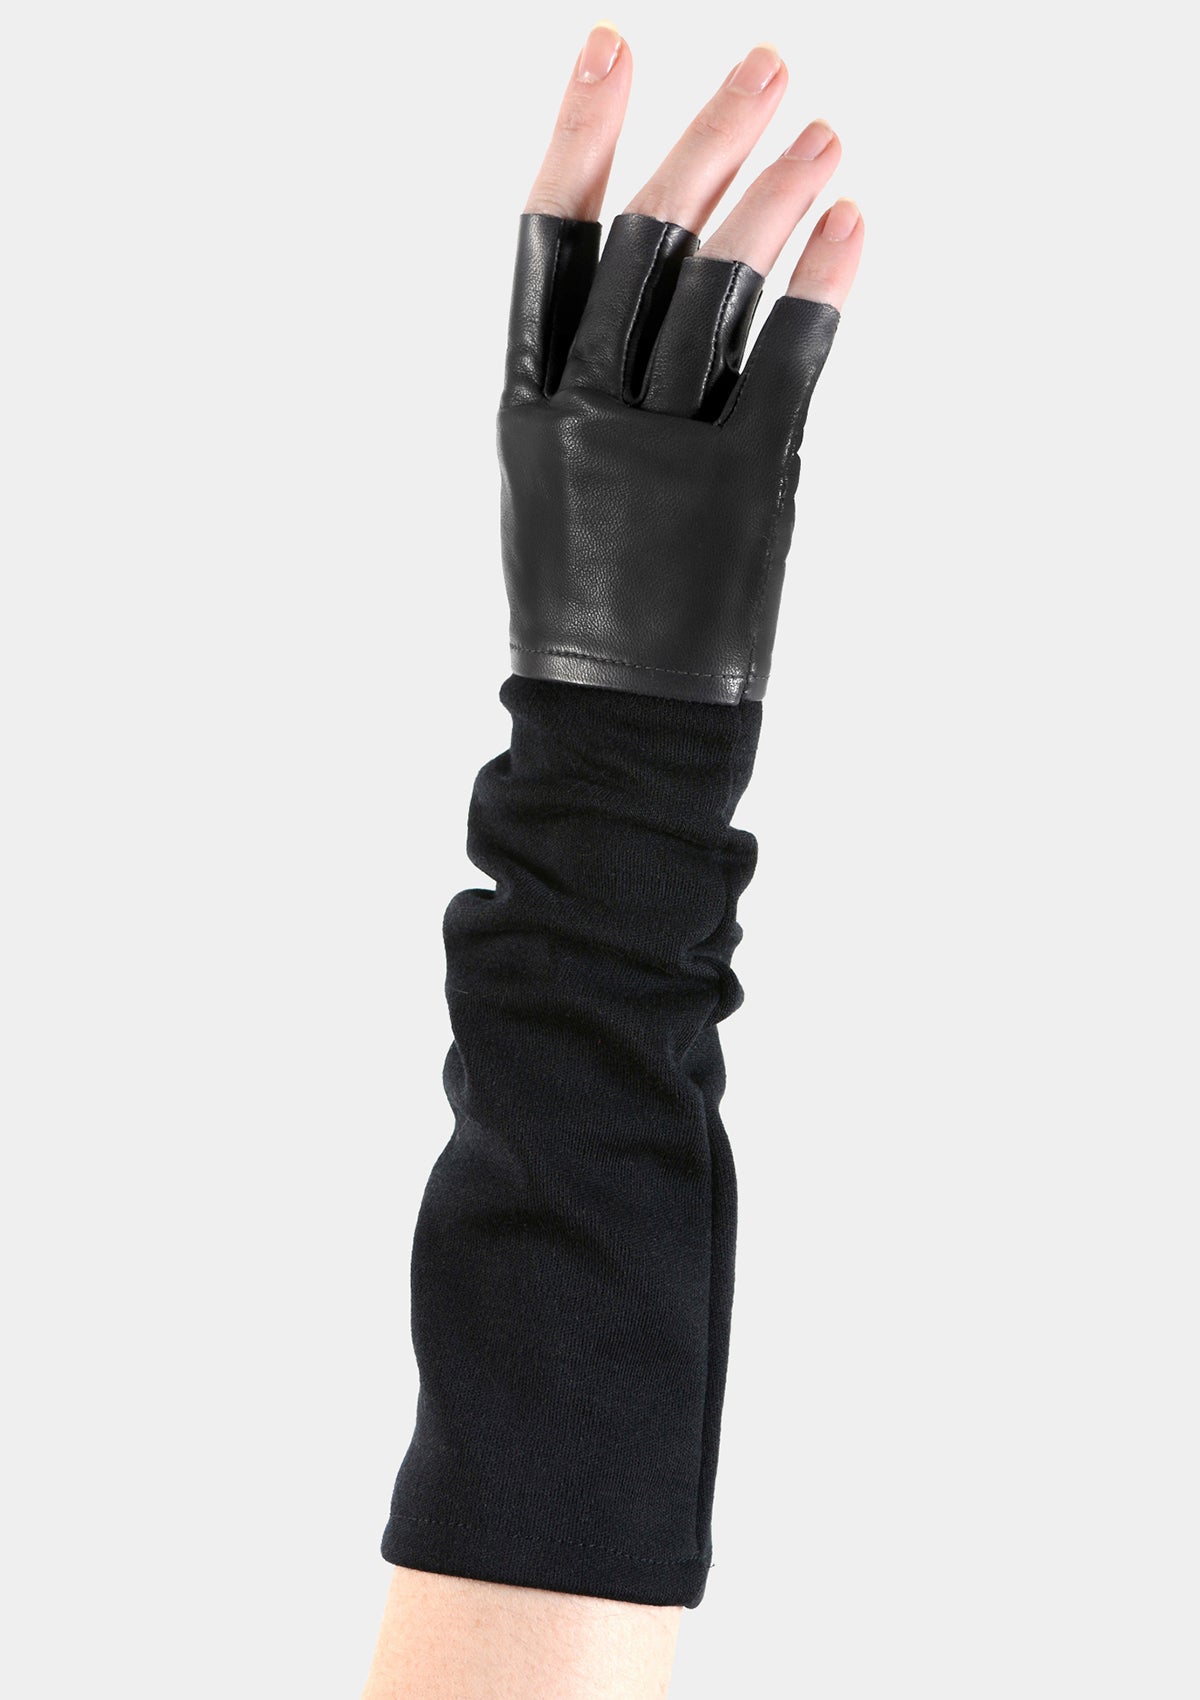 Long black fingerless leather knit gloves